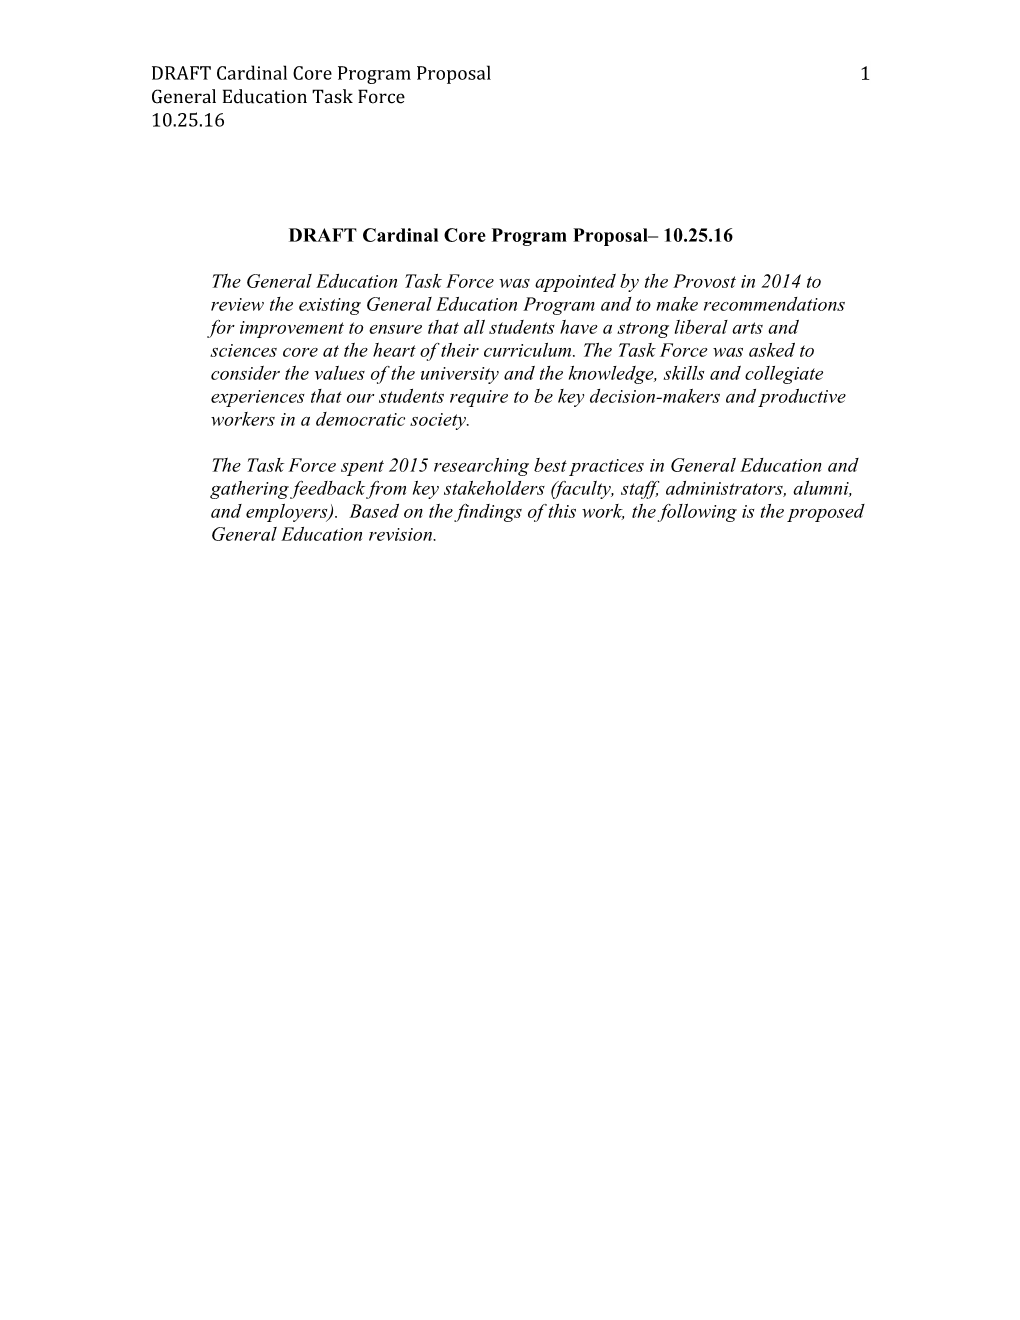 DRAFT Cardinal Core Program Proposal 10.25.16